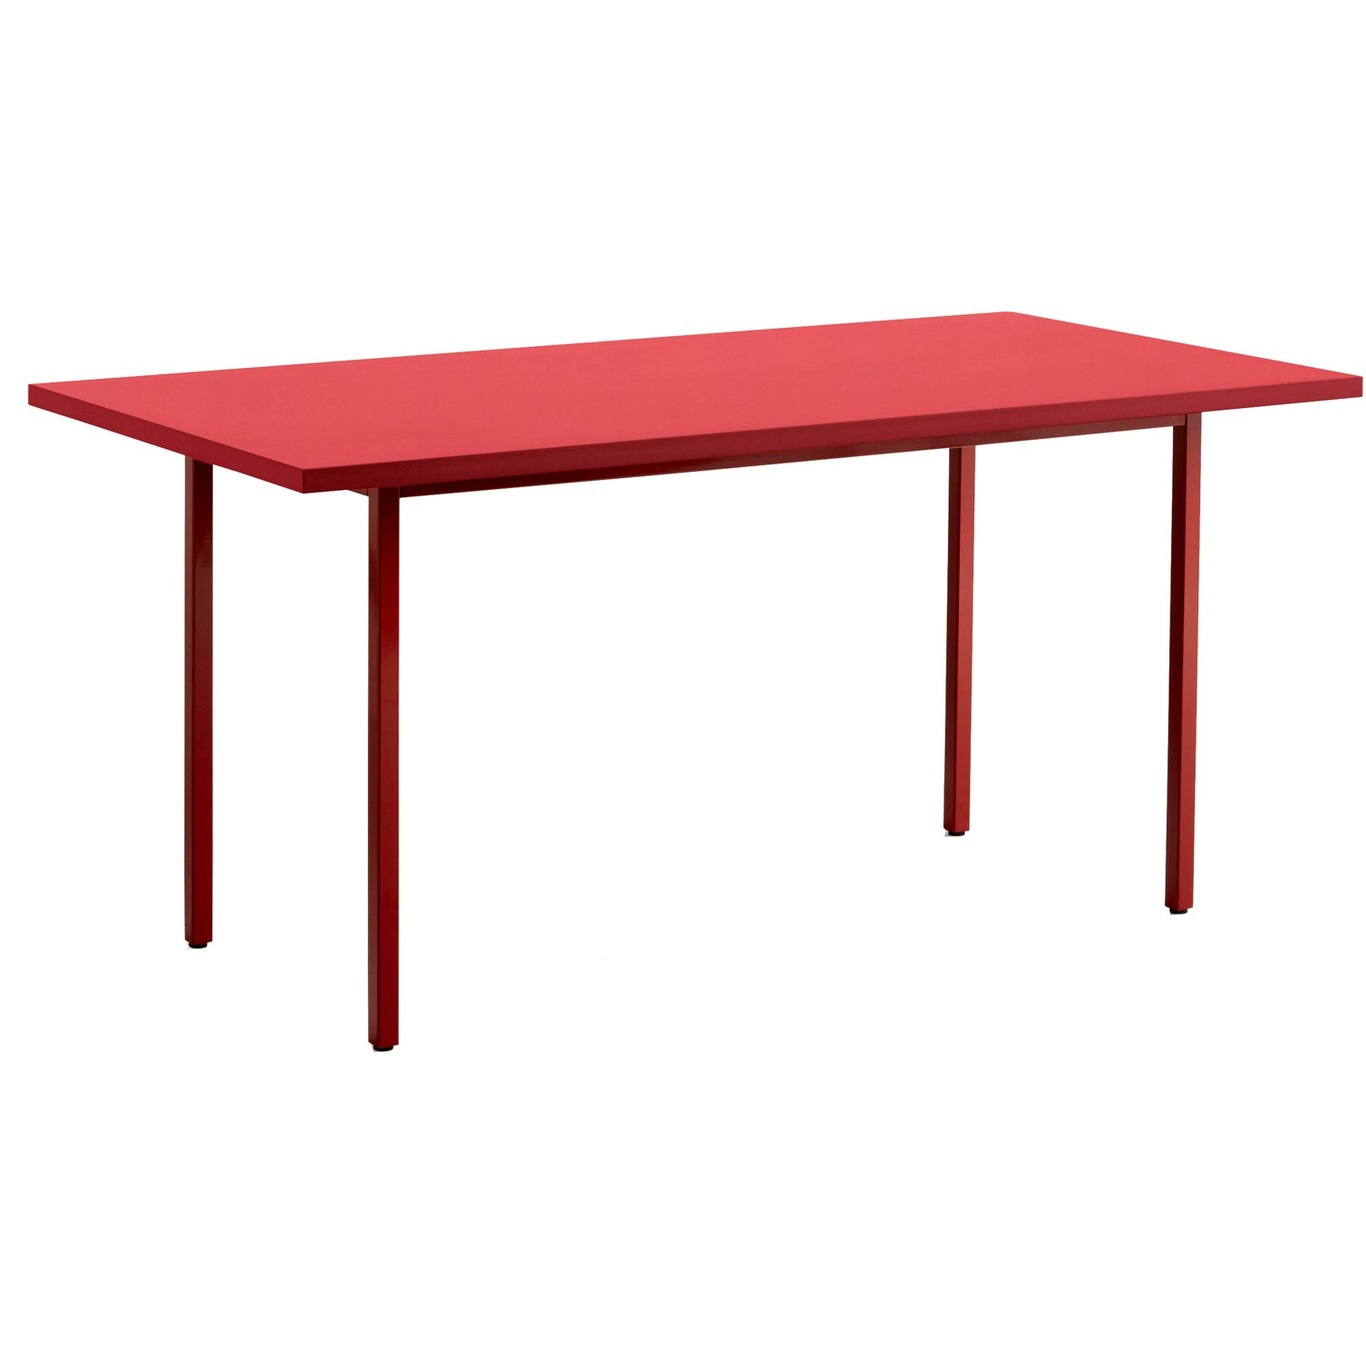 Two-Colour Pöytä 160x82 cm, Viininpunainen / Punainen